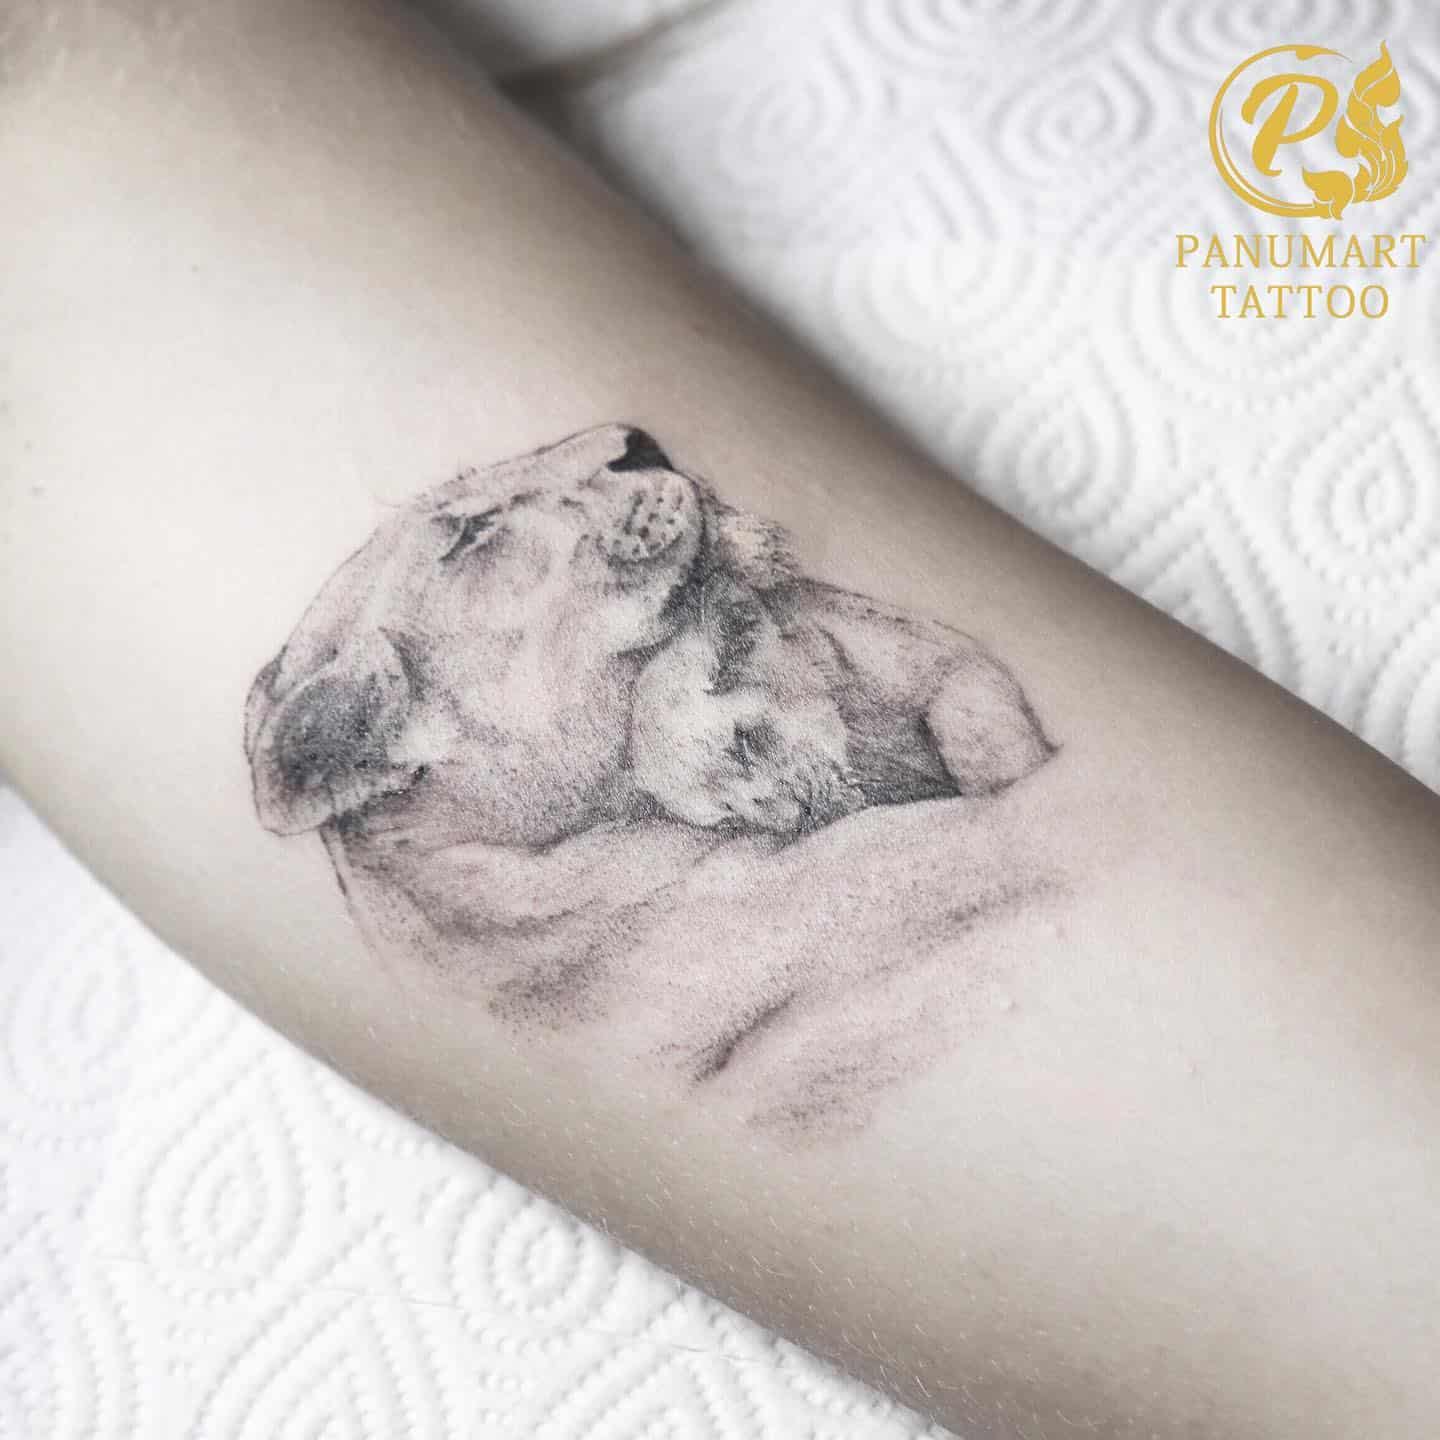 Bear Tattoo Ideas 50